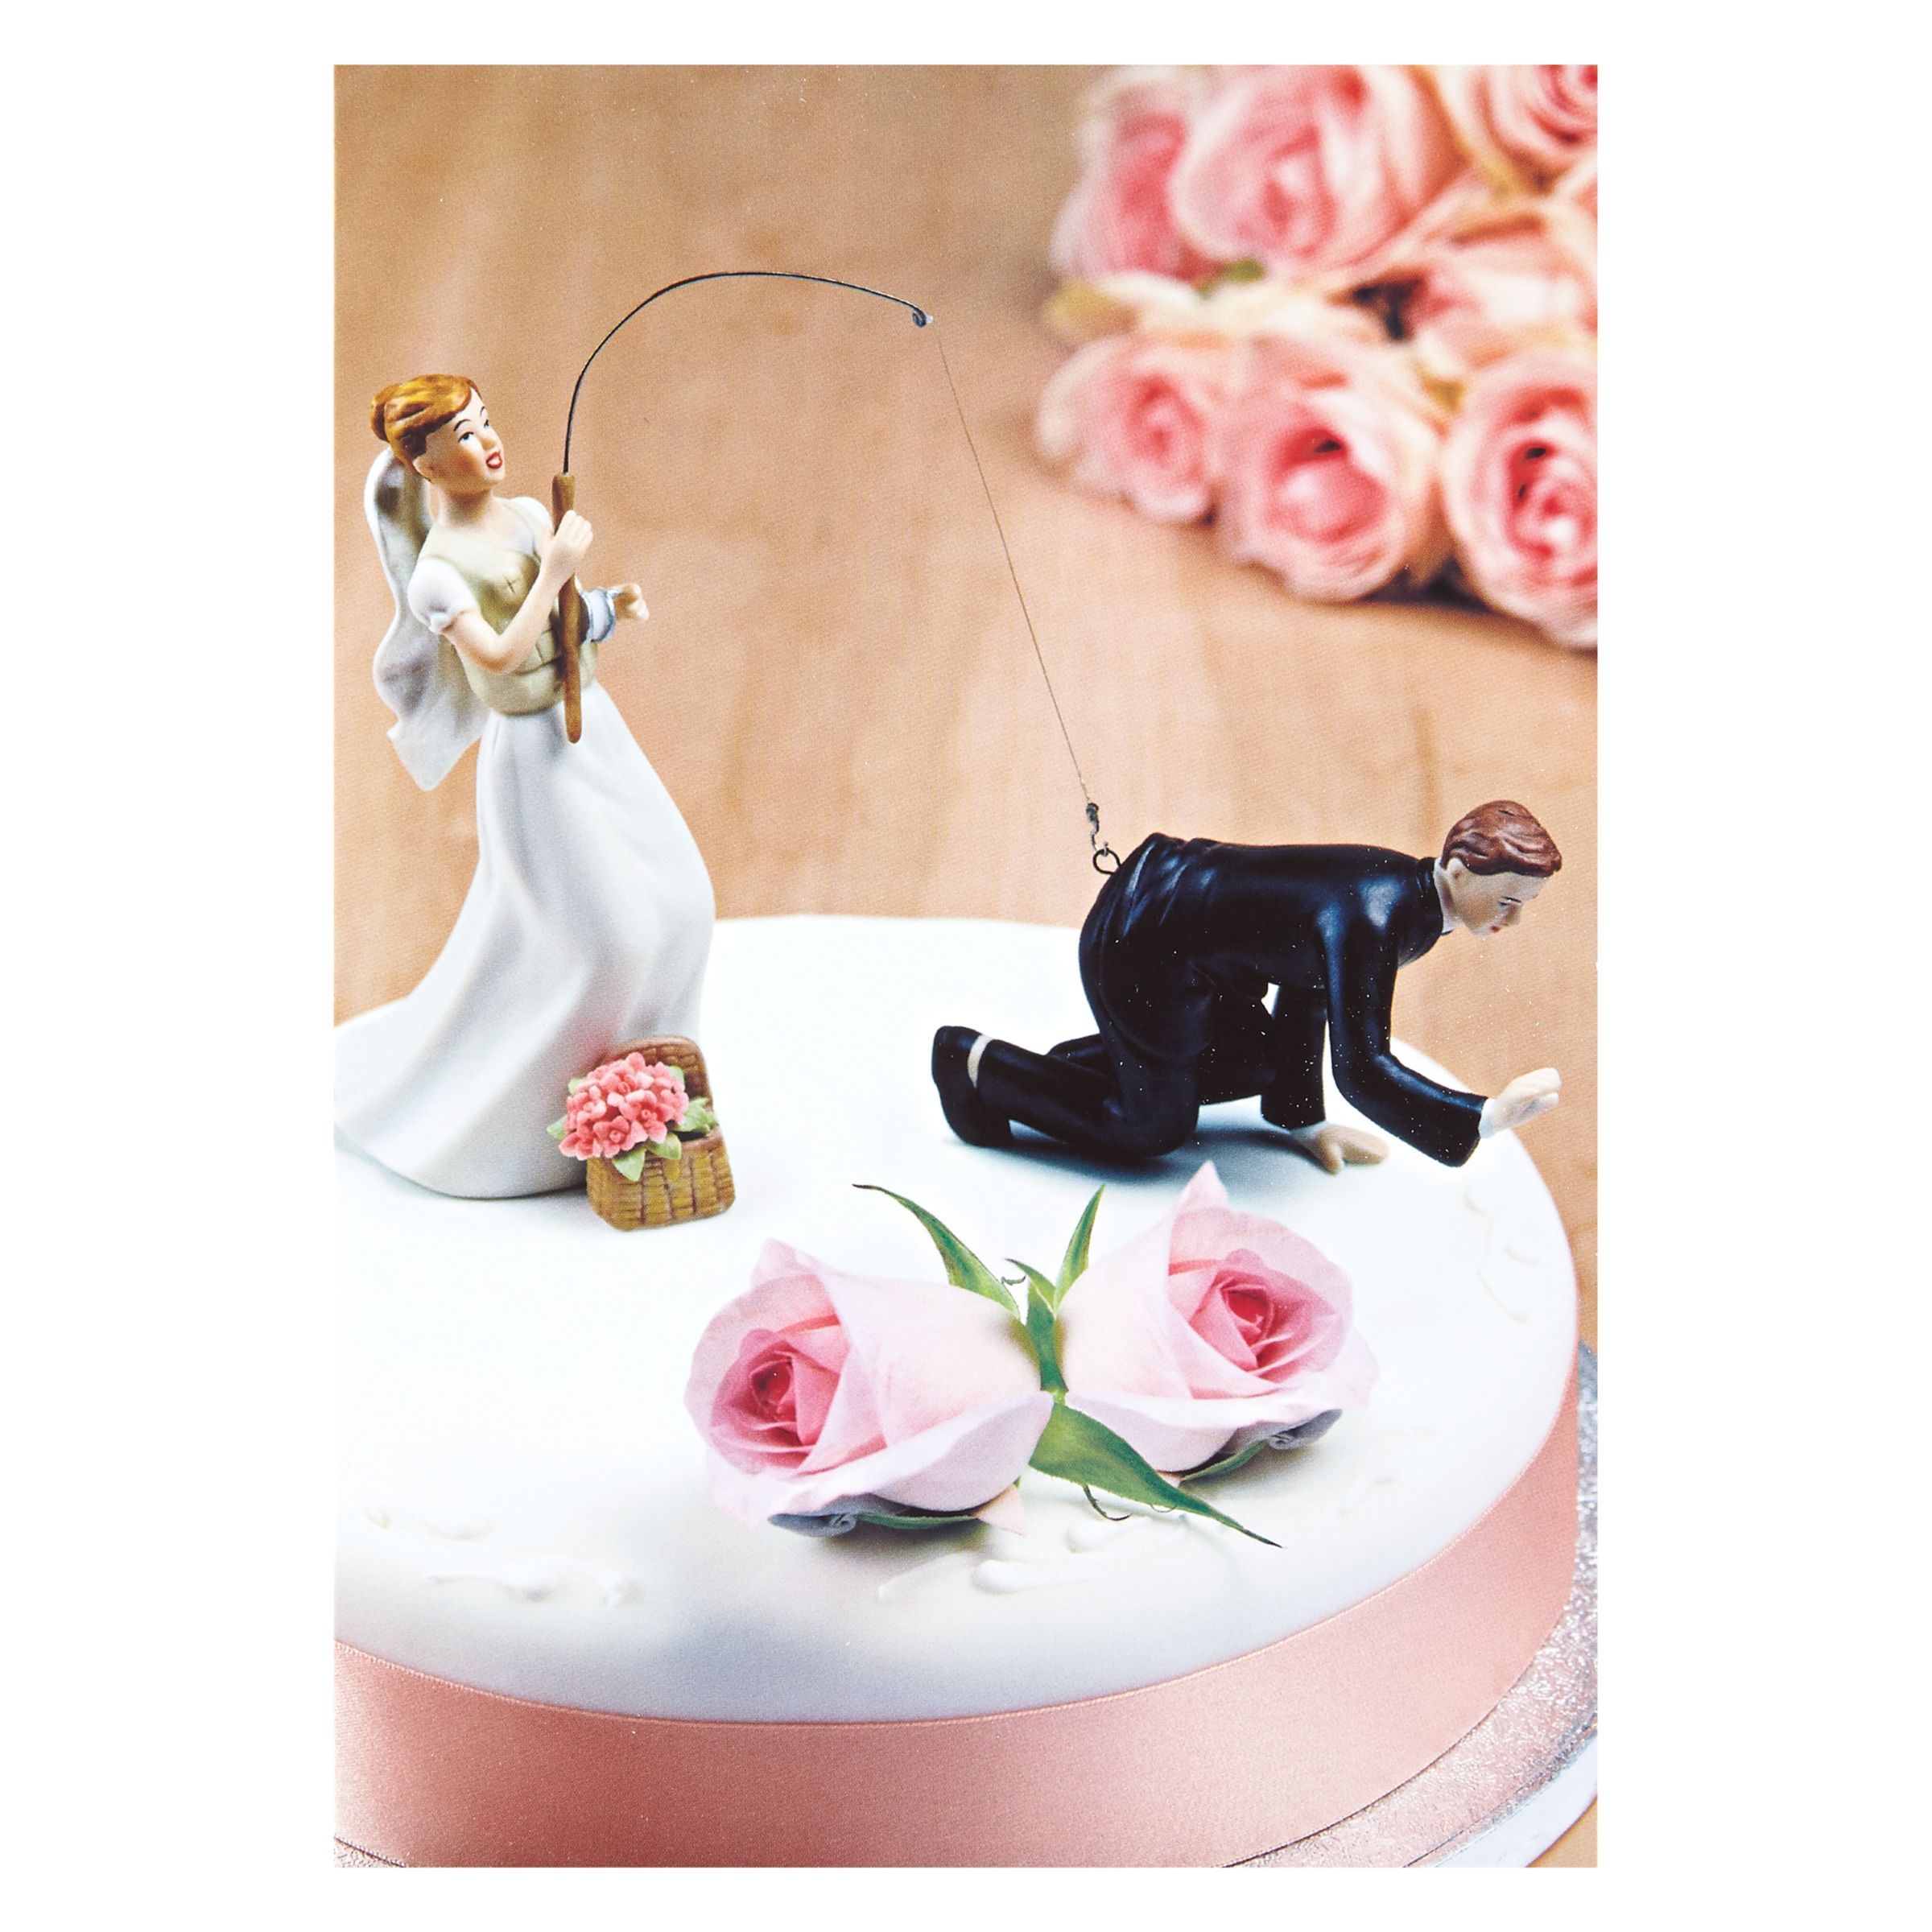  Cake  Topper  Wedding  Card at John  Lewis  Partners